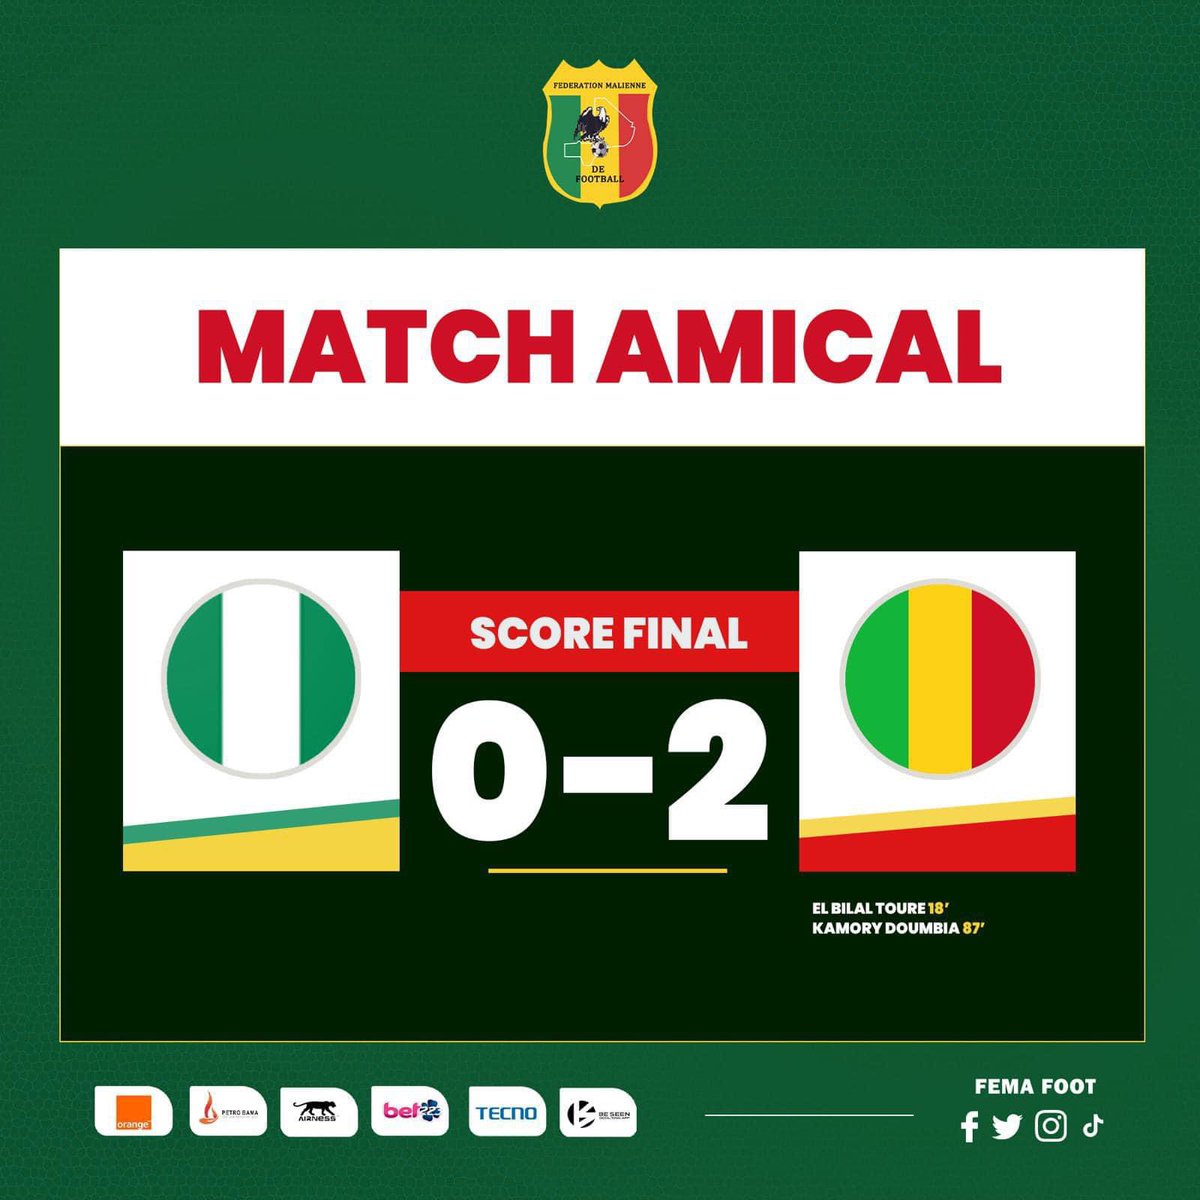 Fenêtre #FIFA | En match amical contre les Super Eagles du #Nigeria, les #Aigles du #Mali se sont imposés hier mardi au Grand Stade de Marrakech sur le score de 2-0. Le buts ont été inscrits par El Bilal Touré (18’) et Kamory Doumbia (87’)